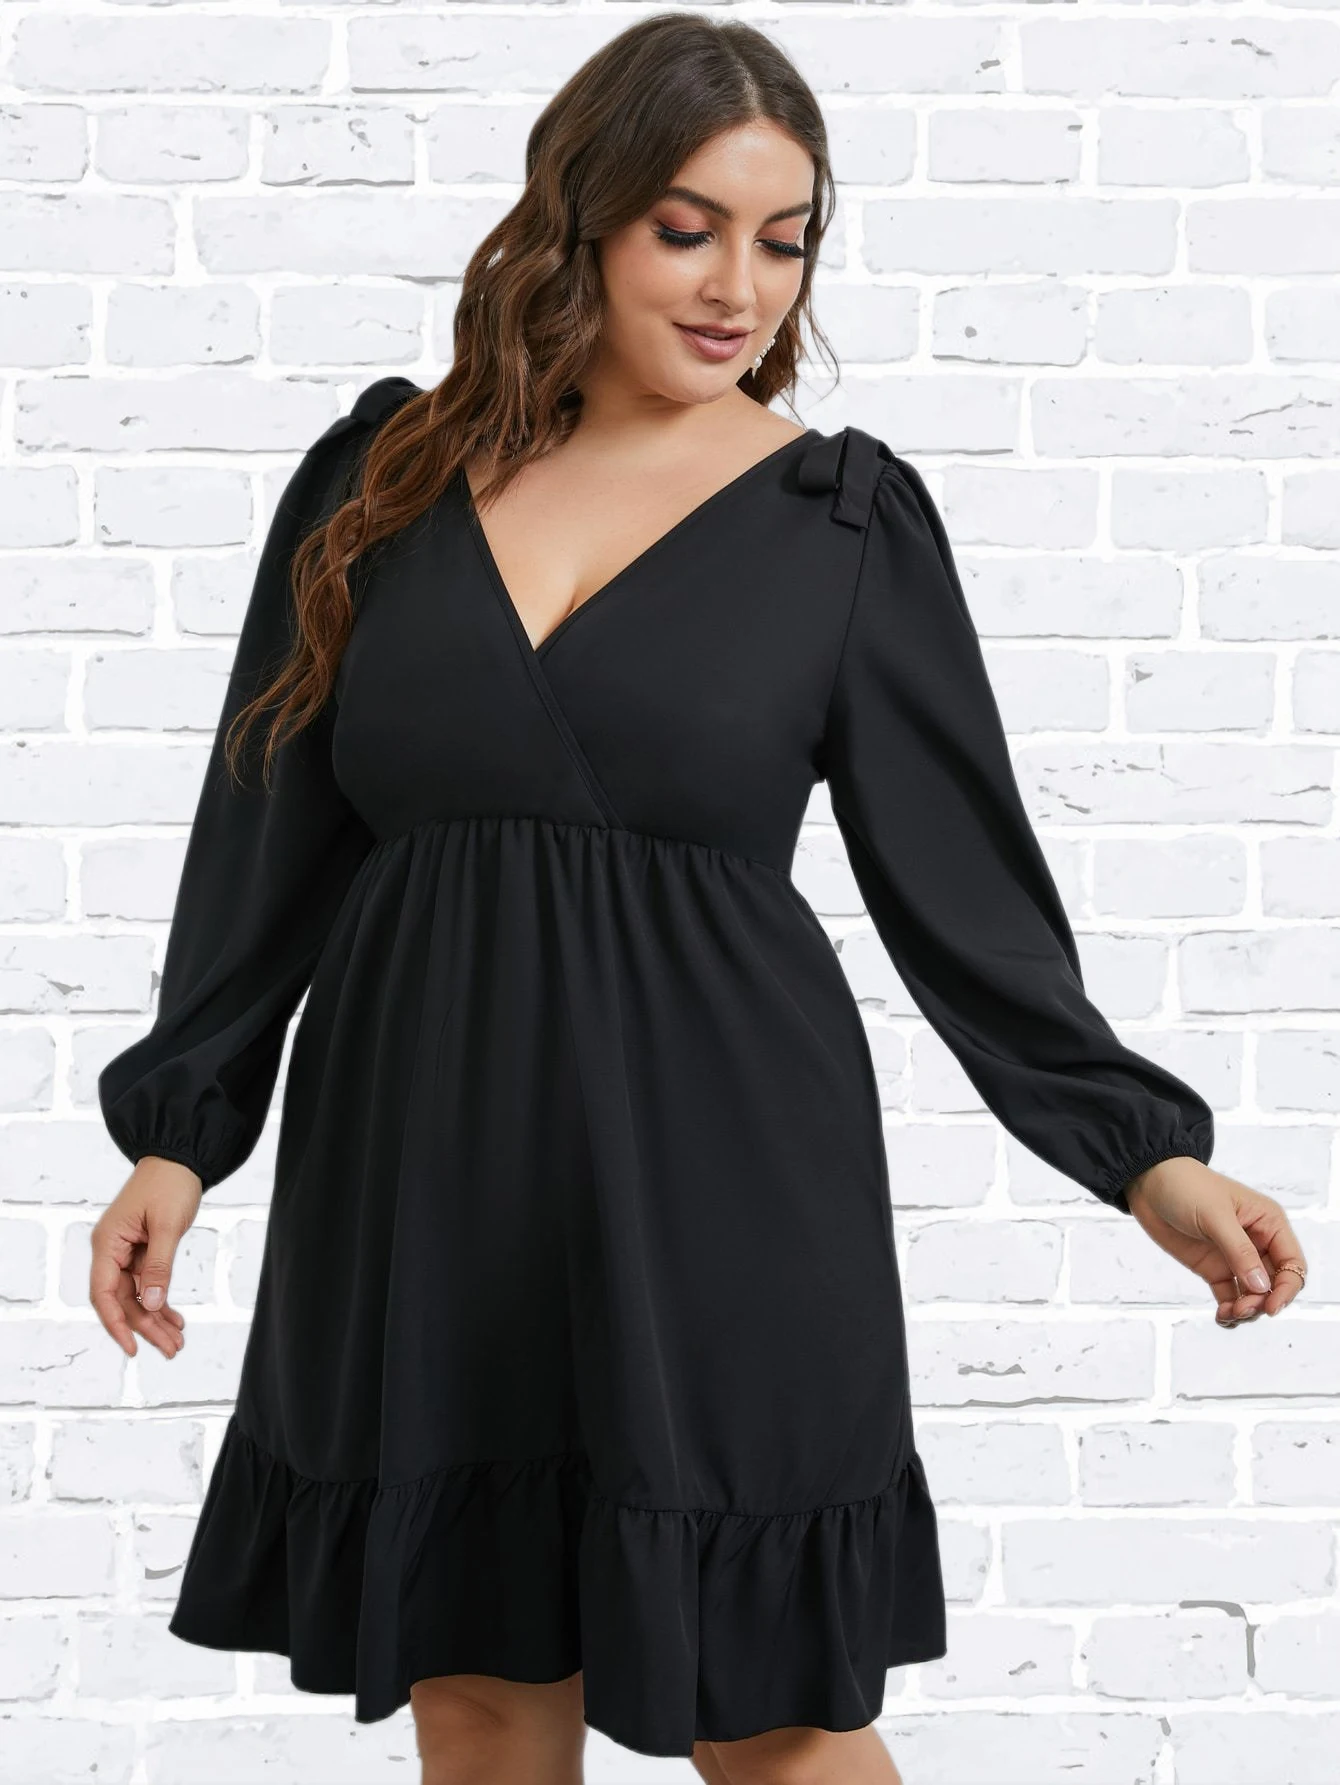 Plus Size Black Loose Dress Women's Long Sleeve V Neck Oversized Casual 4XL Fashion Dresses 2022 Autumn Large Elegant Clothing